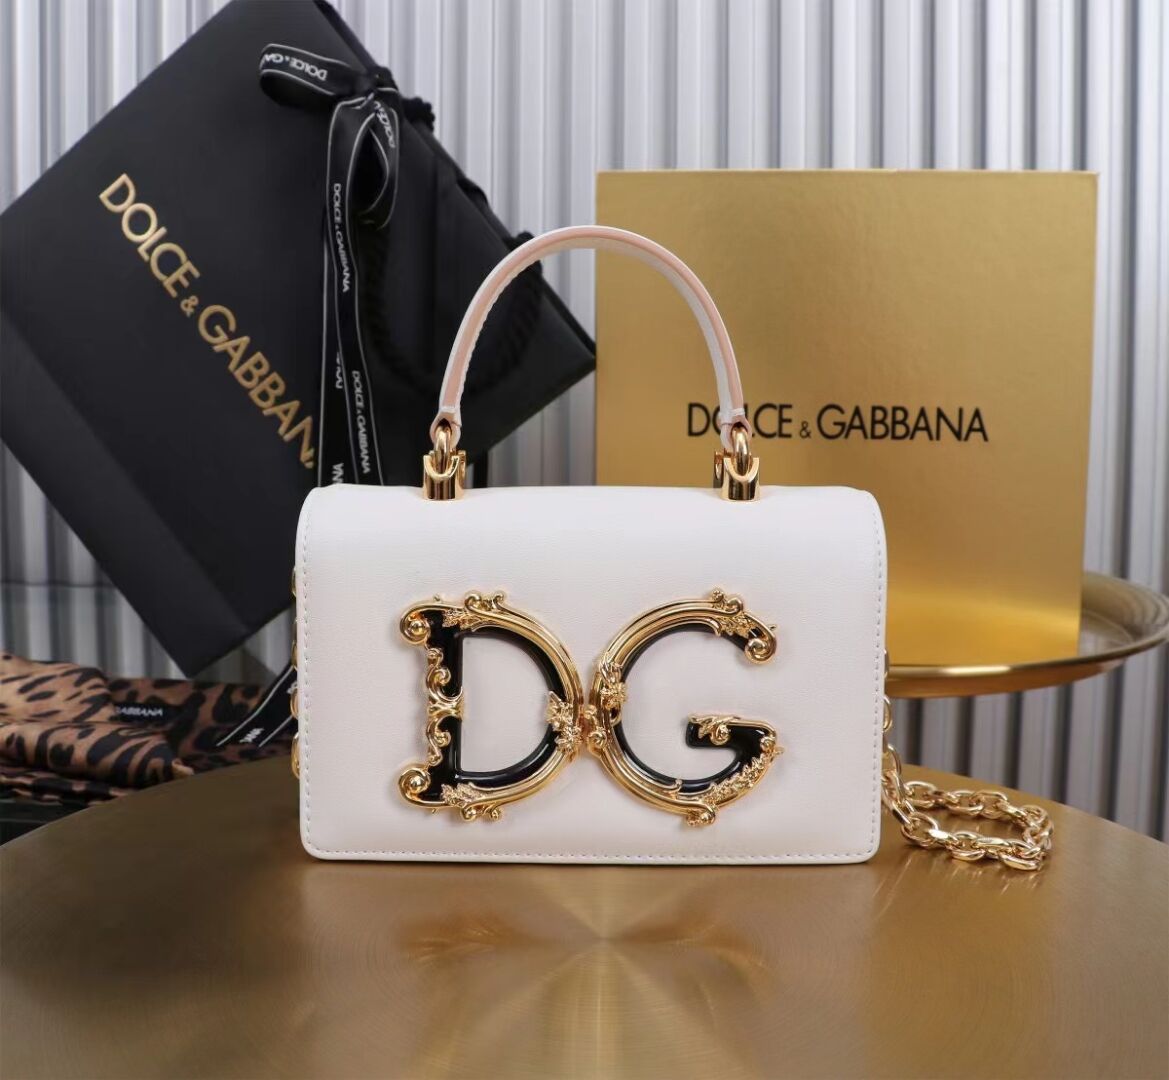 Dolce & Gabbana leather Shoulder Bag G6504 white